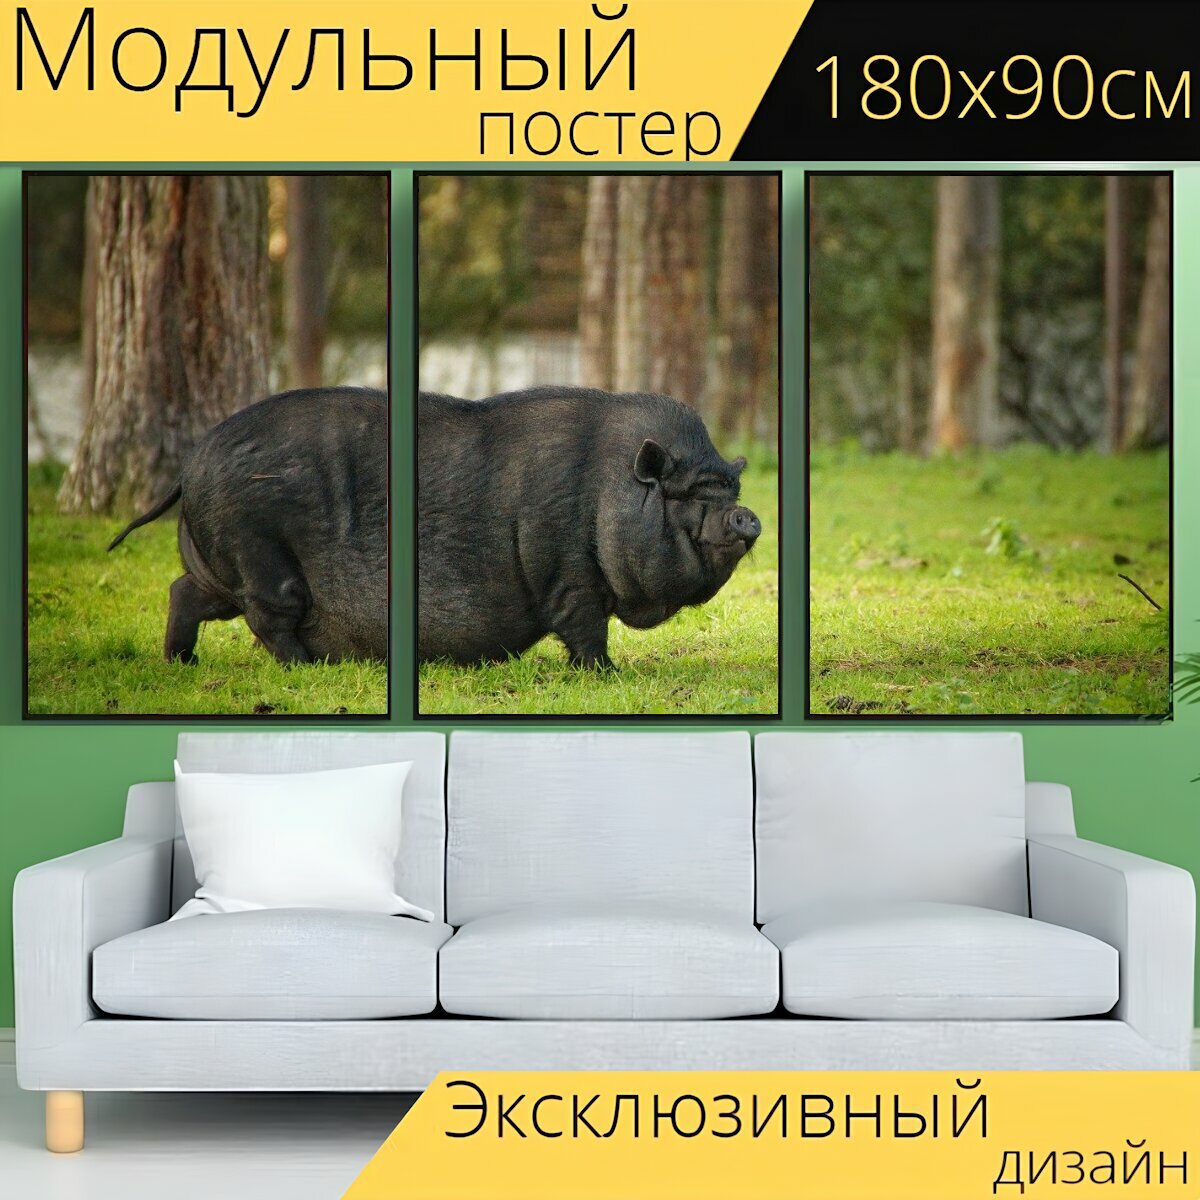 Модульный постер "Пузатая свинья, карликовая свинья, домашняя свинья" 180 x 90 см. для интерьера